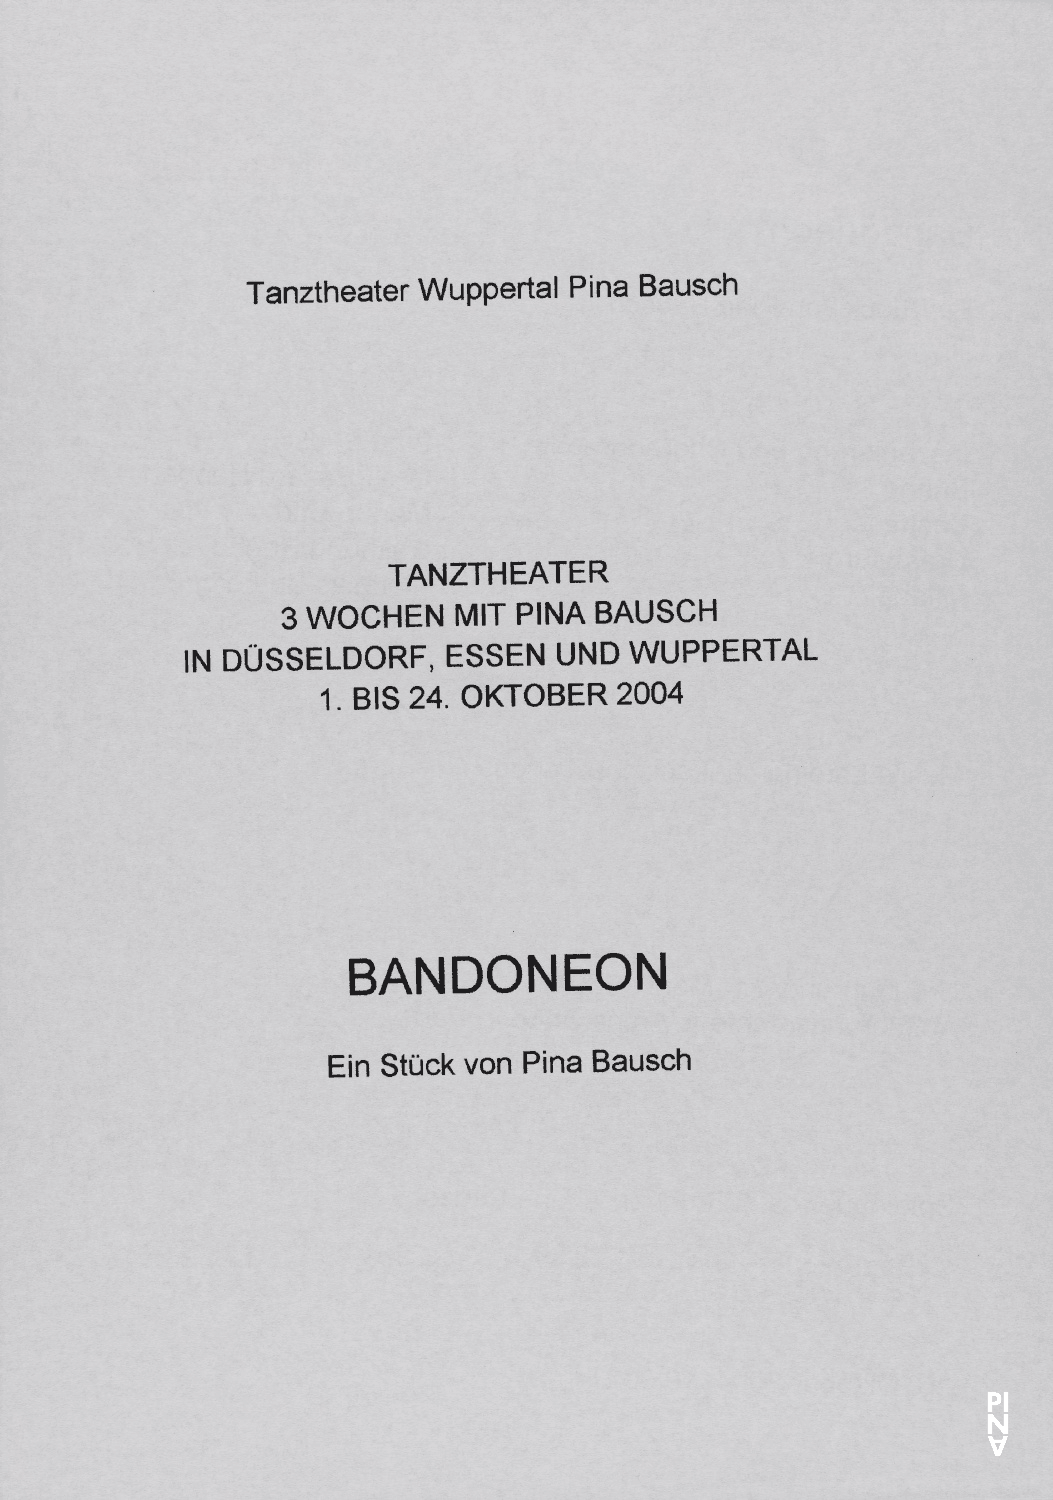 Abendzettel zu „Bandoneon“ von Pina Bausch mit Tanztheater Wuppertal in Wuppertal, 16. Oktober 2004